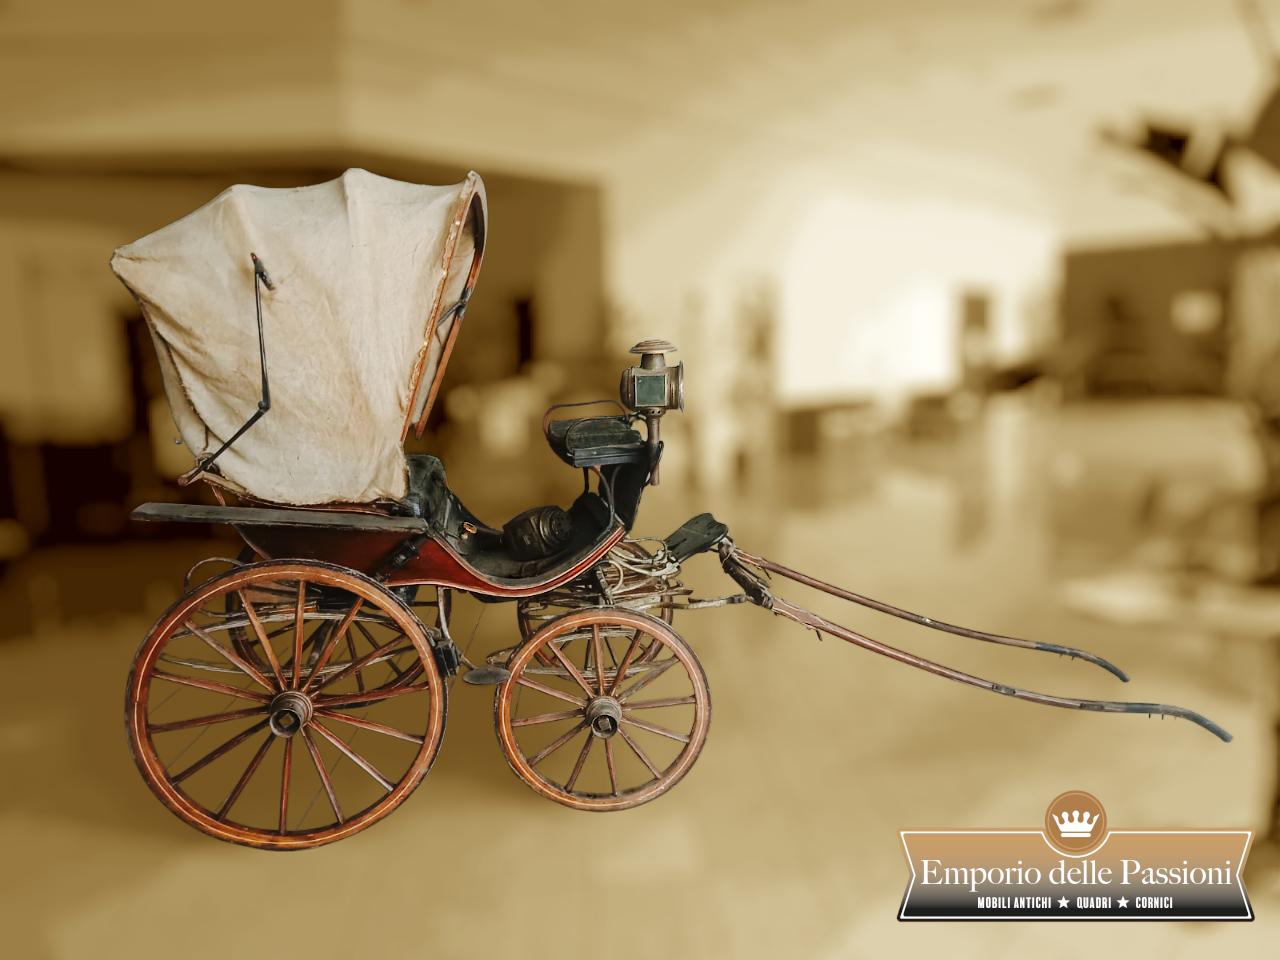 Originaler italienischer Wagen aus der Zeit um 1870-80.
Vierrädrige Kutsche mit einem großen faltbaren Faltenbalg,
mit einem zweisitzigen Sitz für die Fahrgäste und einem höheren Sitz für den Kutscher.
Der Rücksitz ist aus schwarzem Leder,